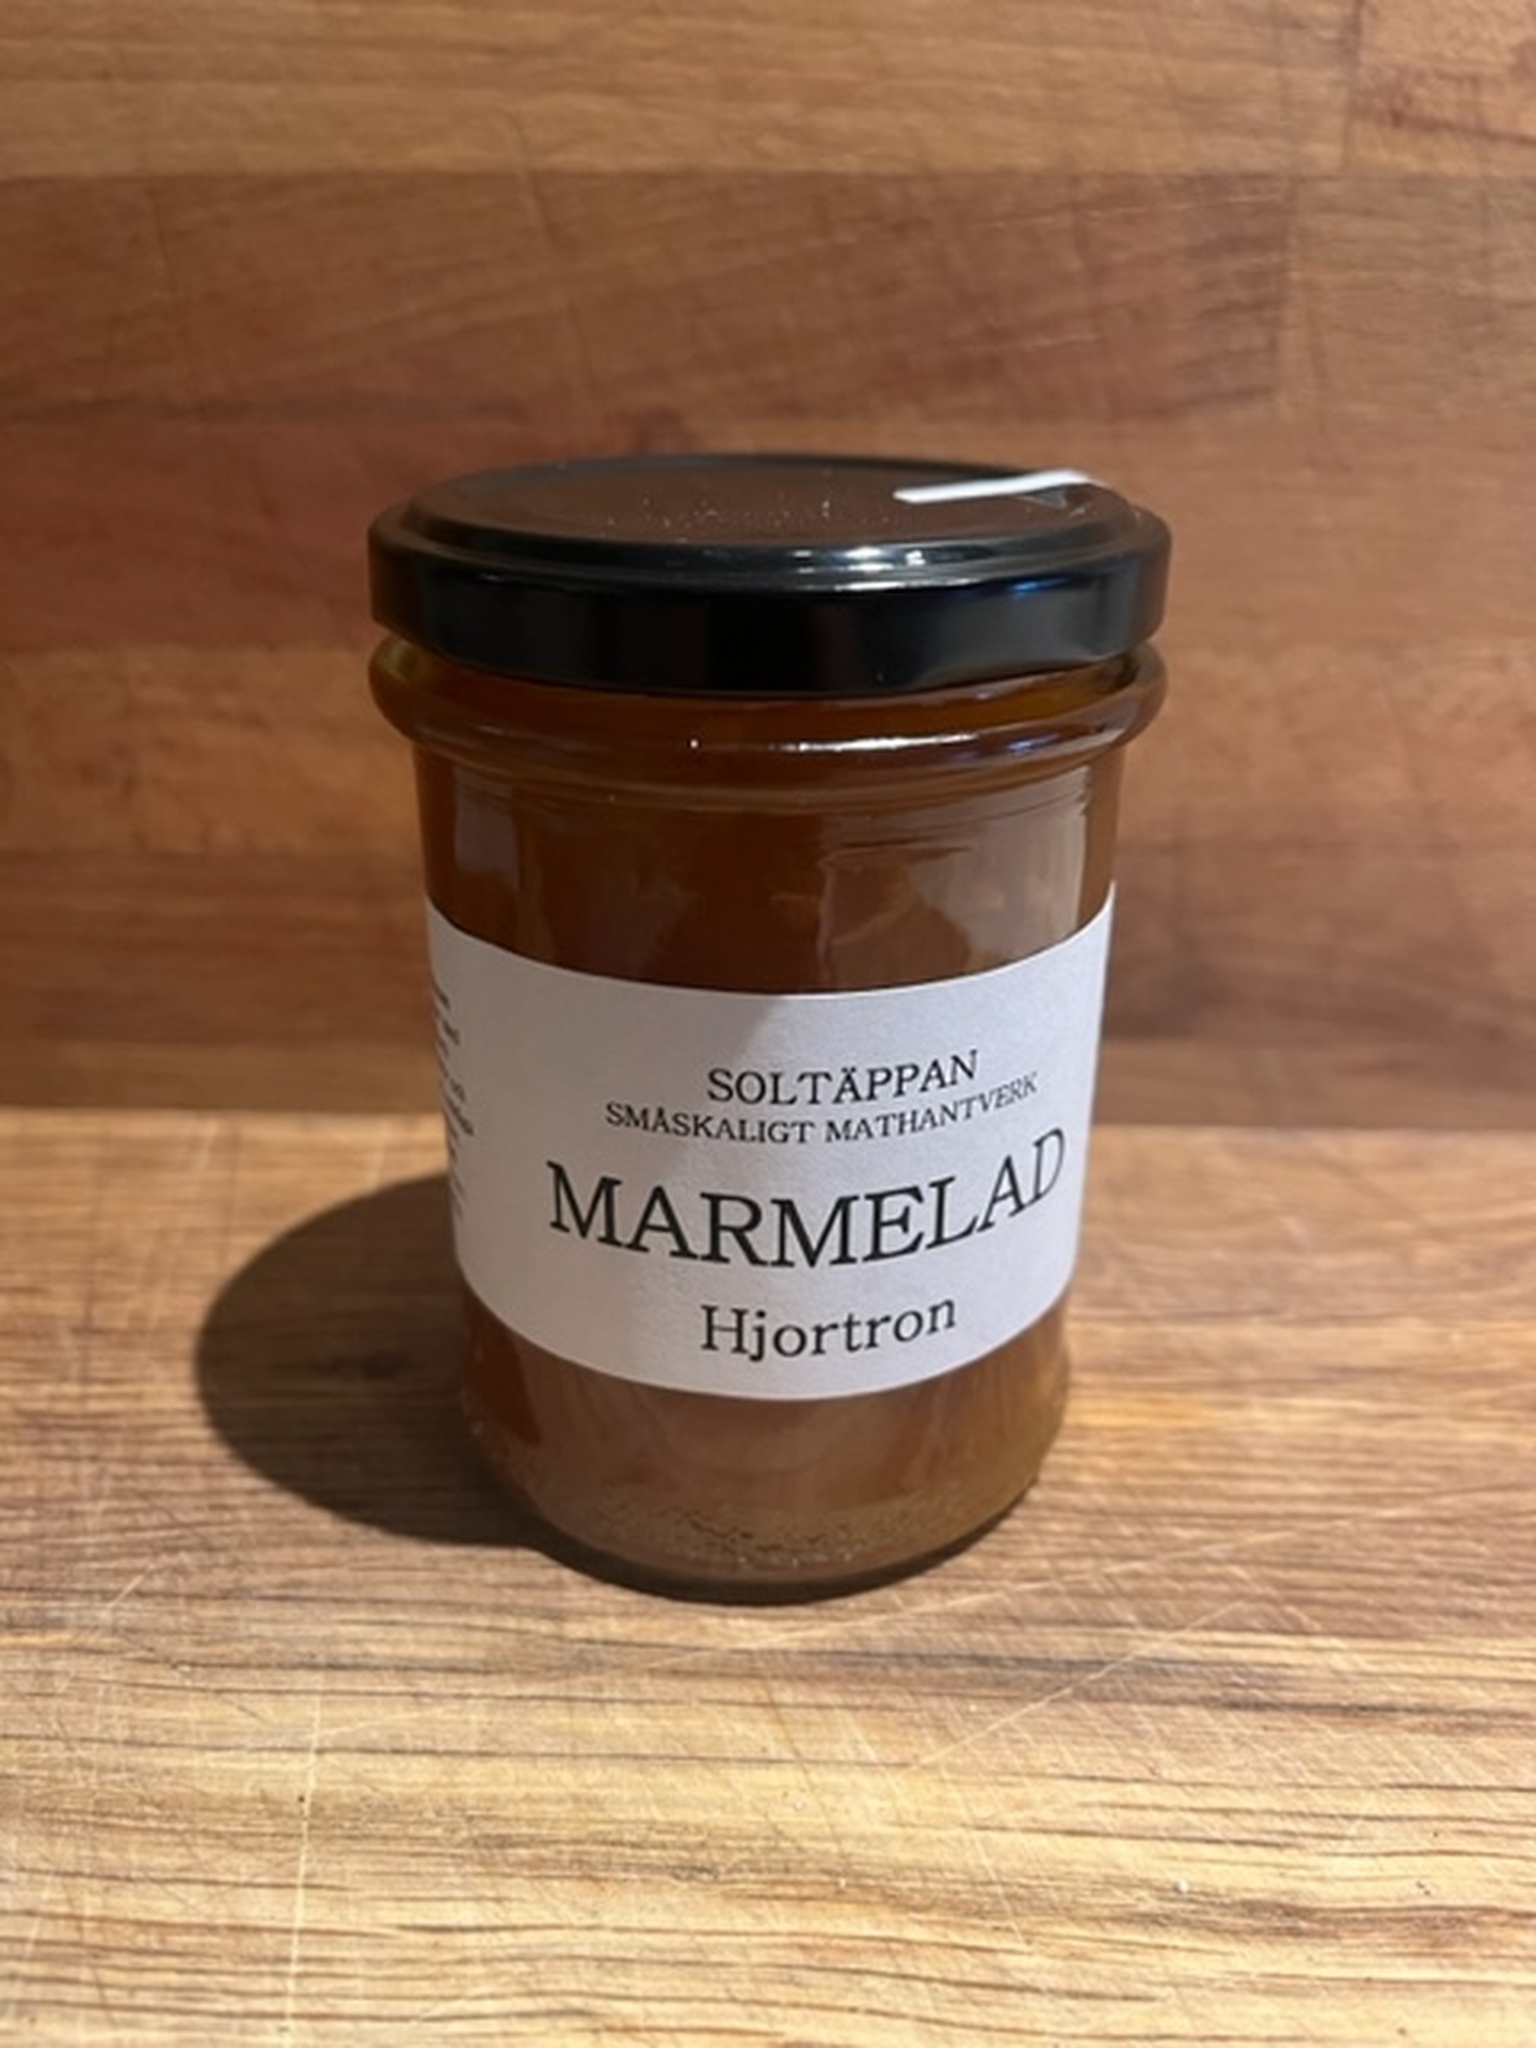 Soltäppans marmelad, 220g - Finns i flera smaker